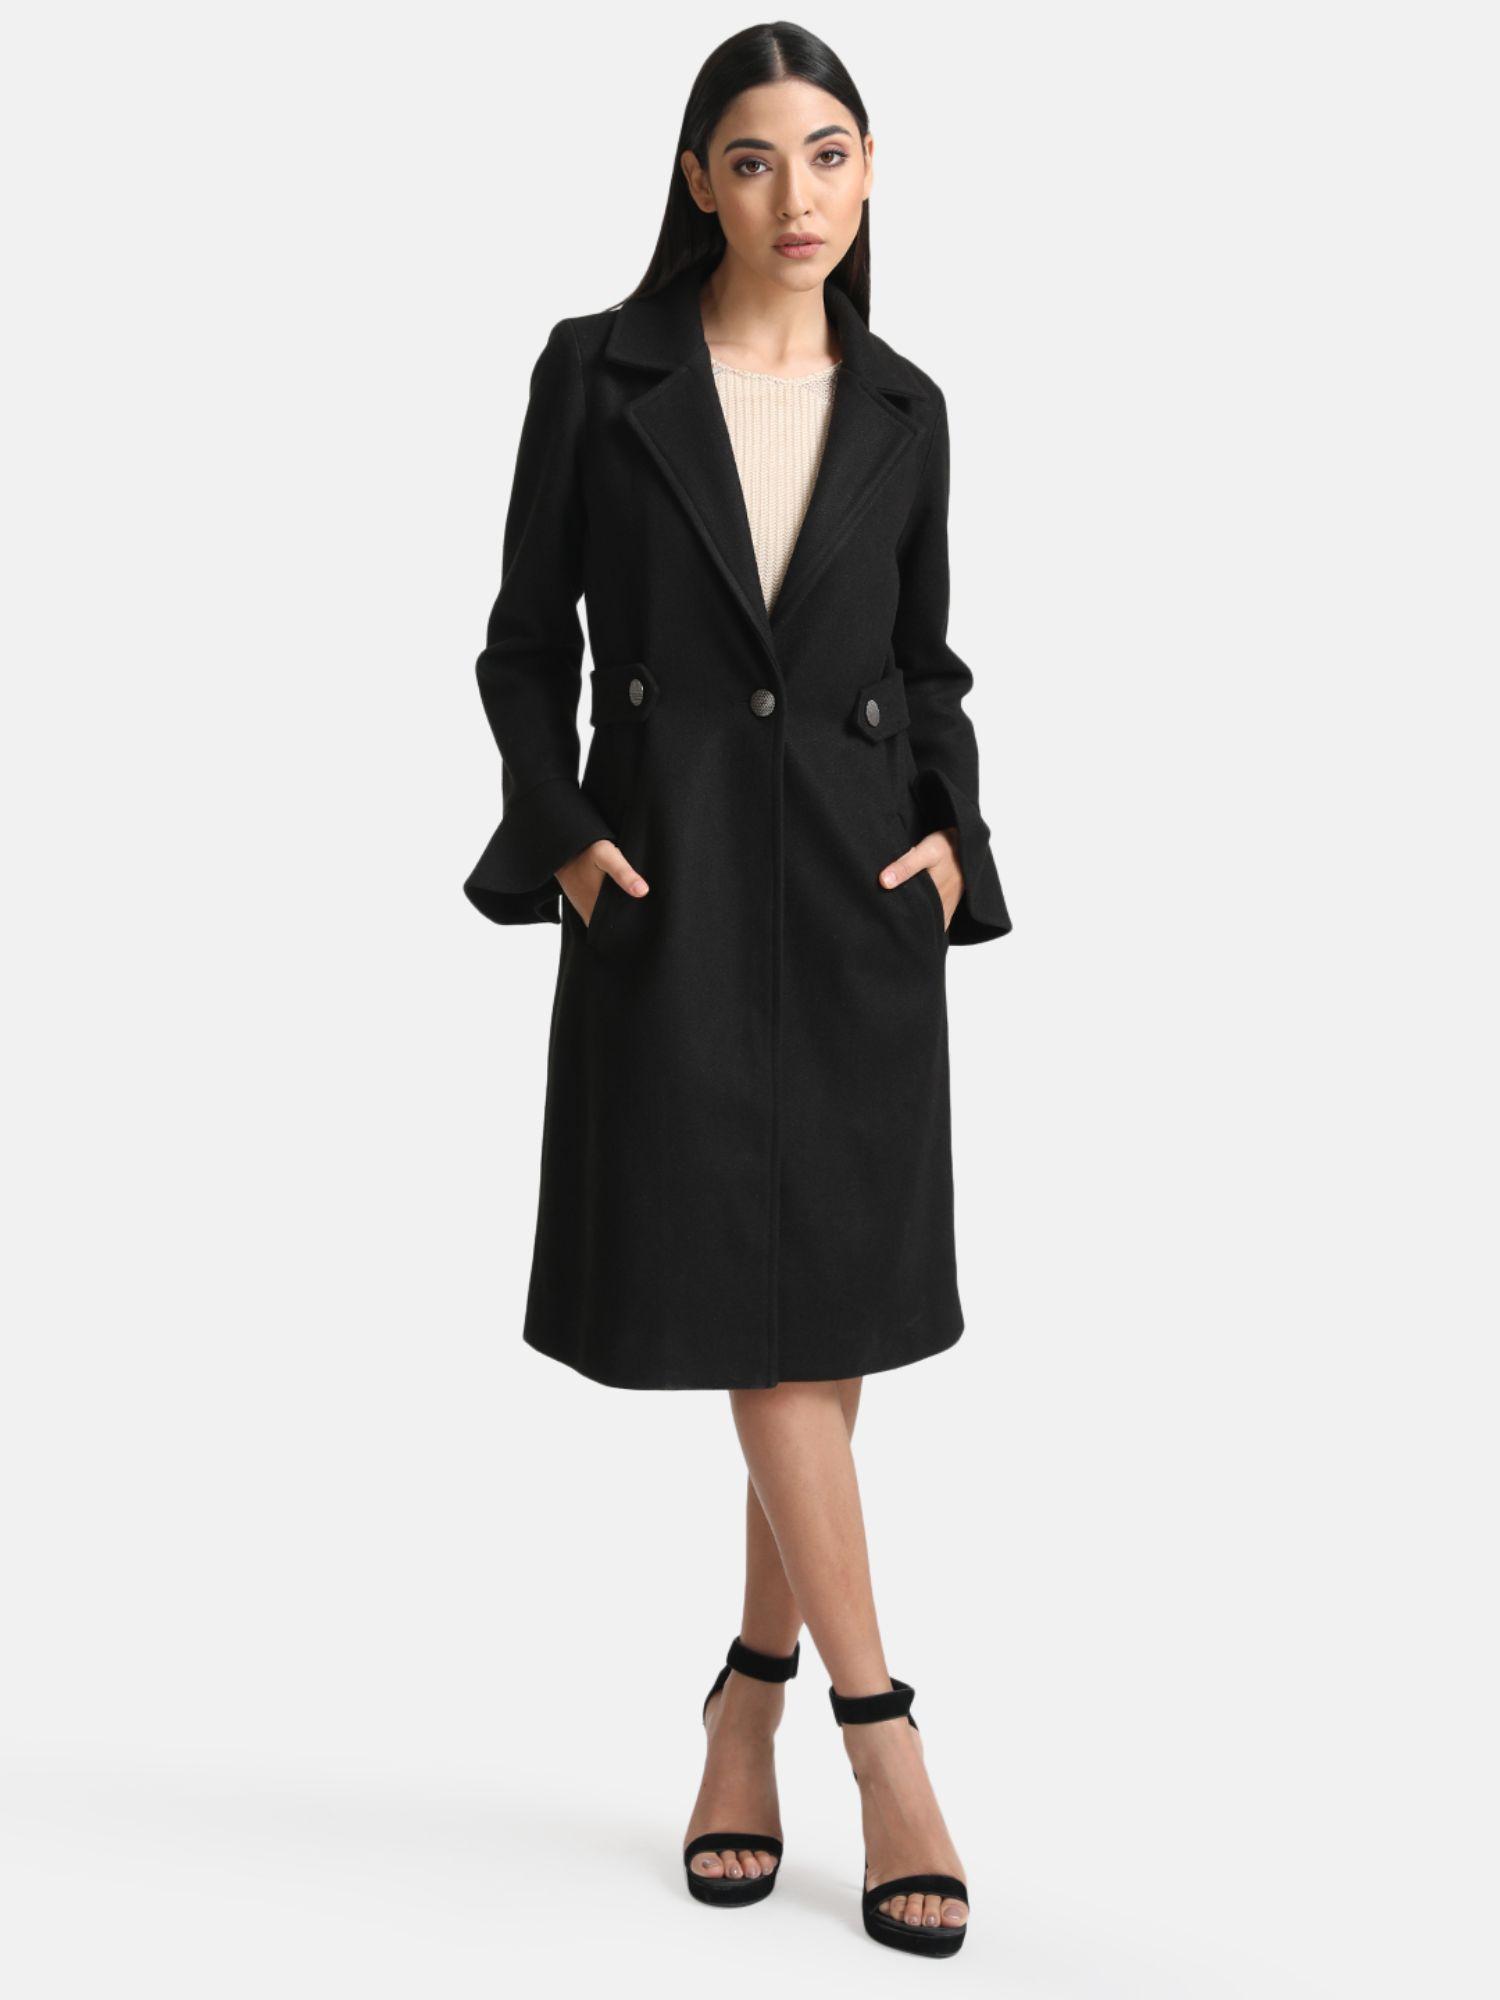 black overcoat with peplum sleeves